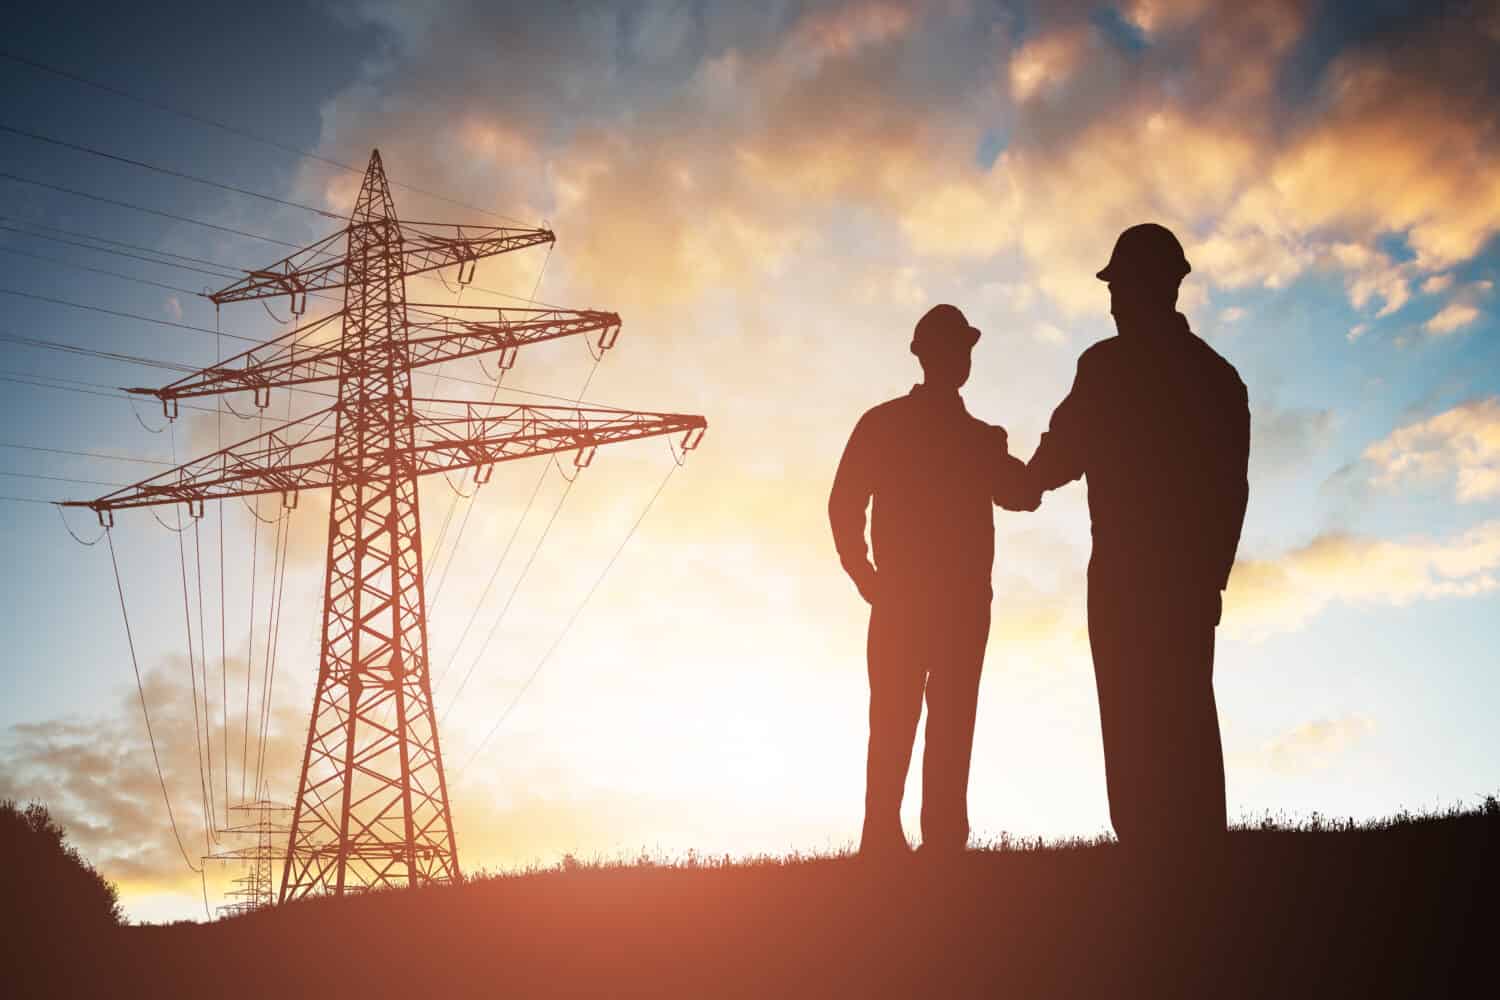 Sagoma di due ingegneri che stringono la mano con il pilone di elettricità contro il cielo drammatico